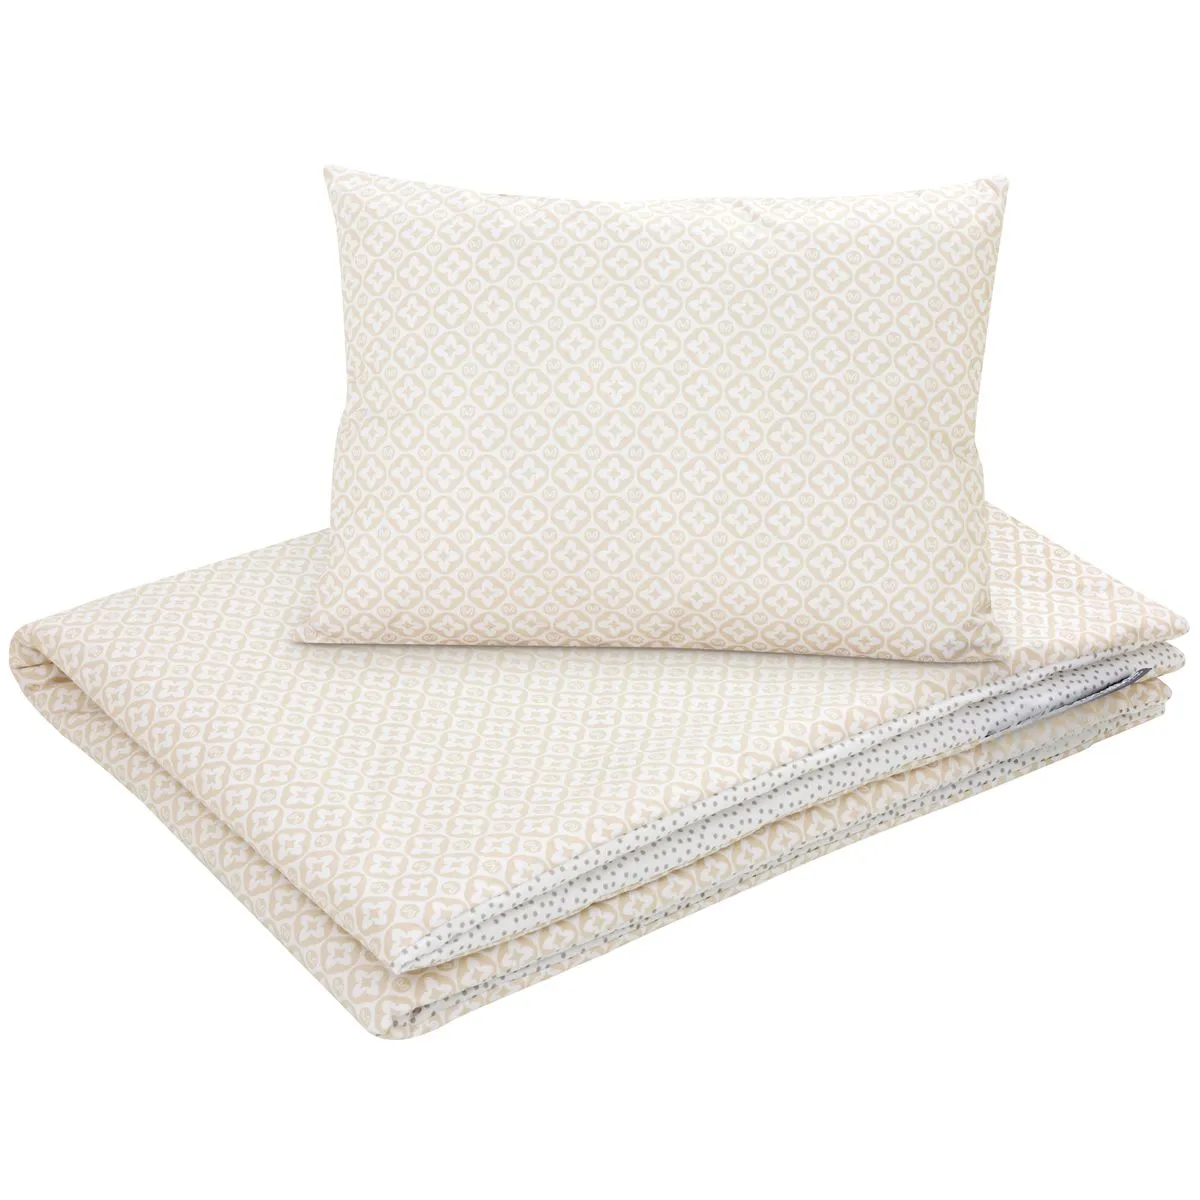 Cotton Toddler bedding 2 pc set, kid duvet cover 135×100 cm and pillowcase 60×40 cm lui dots